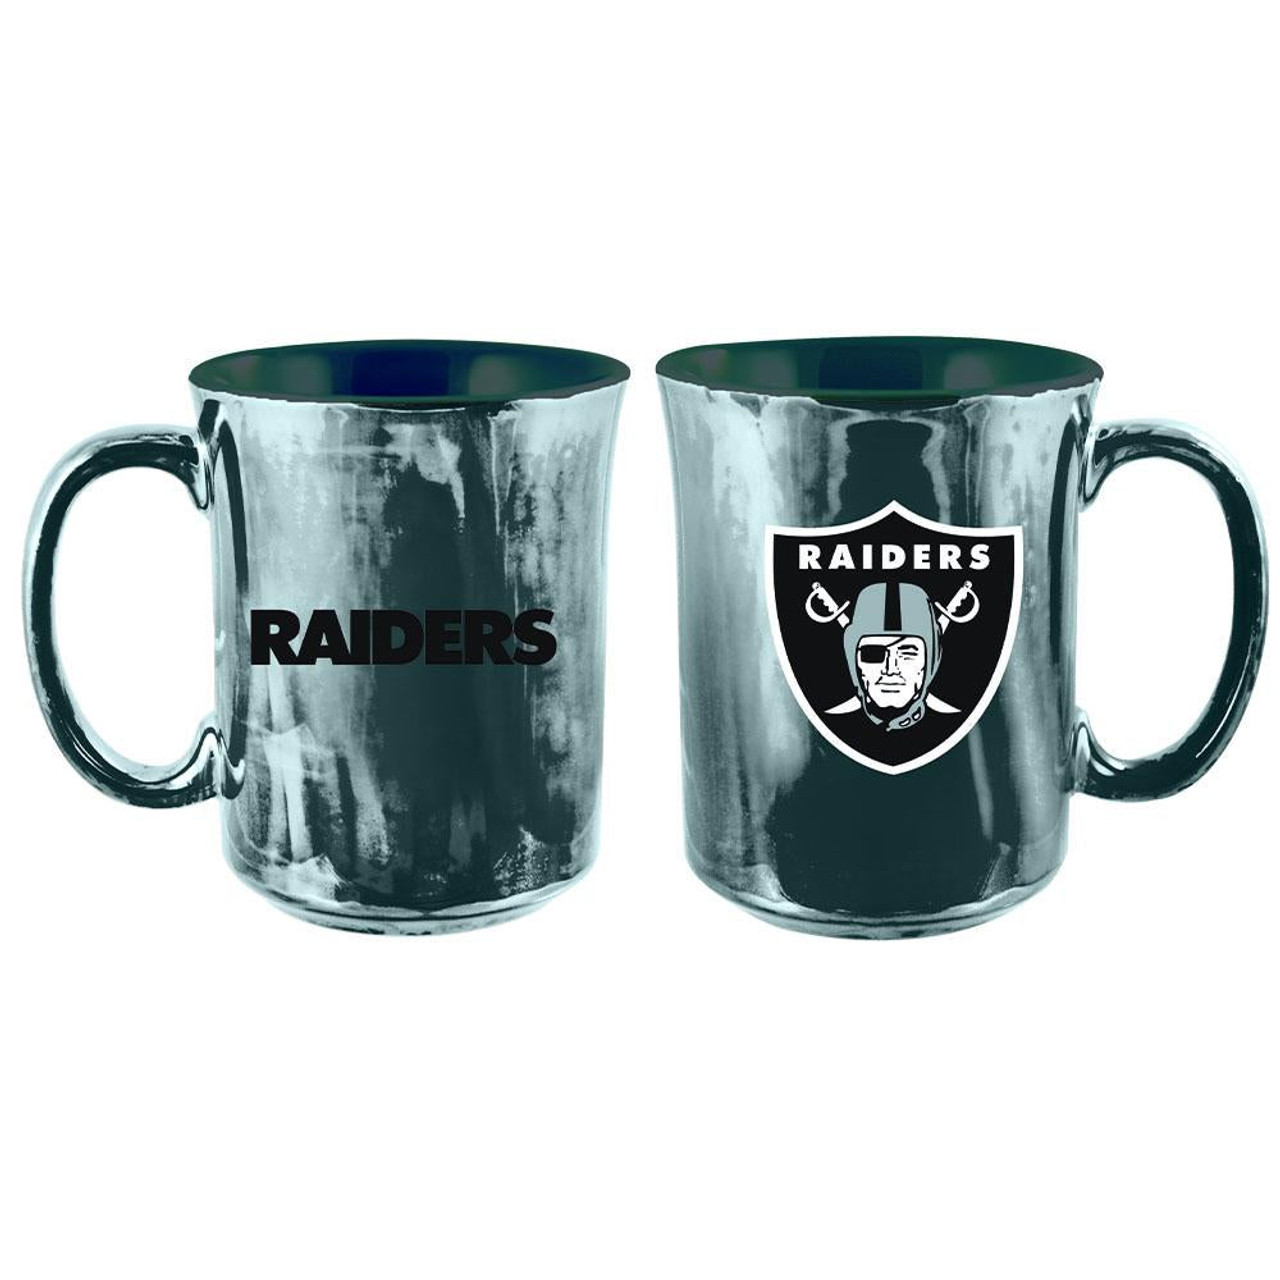 The Memory Company Las Vegas Raiders Football Mug